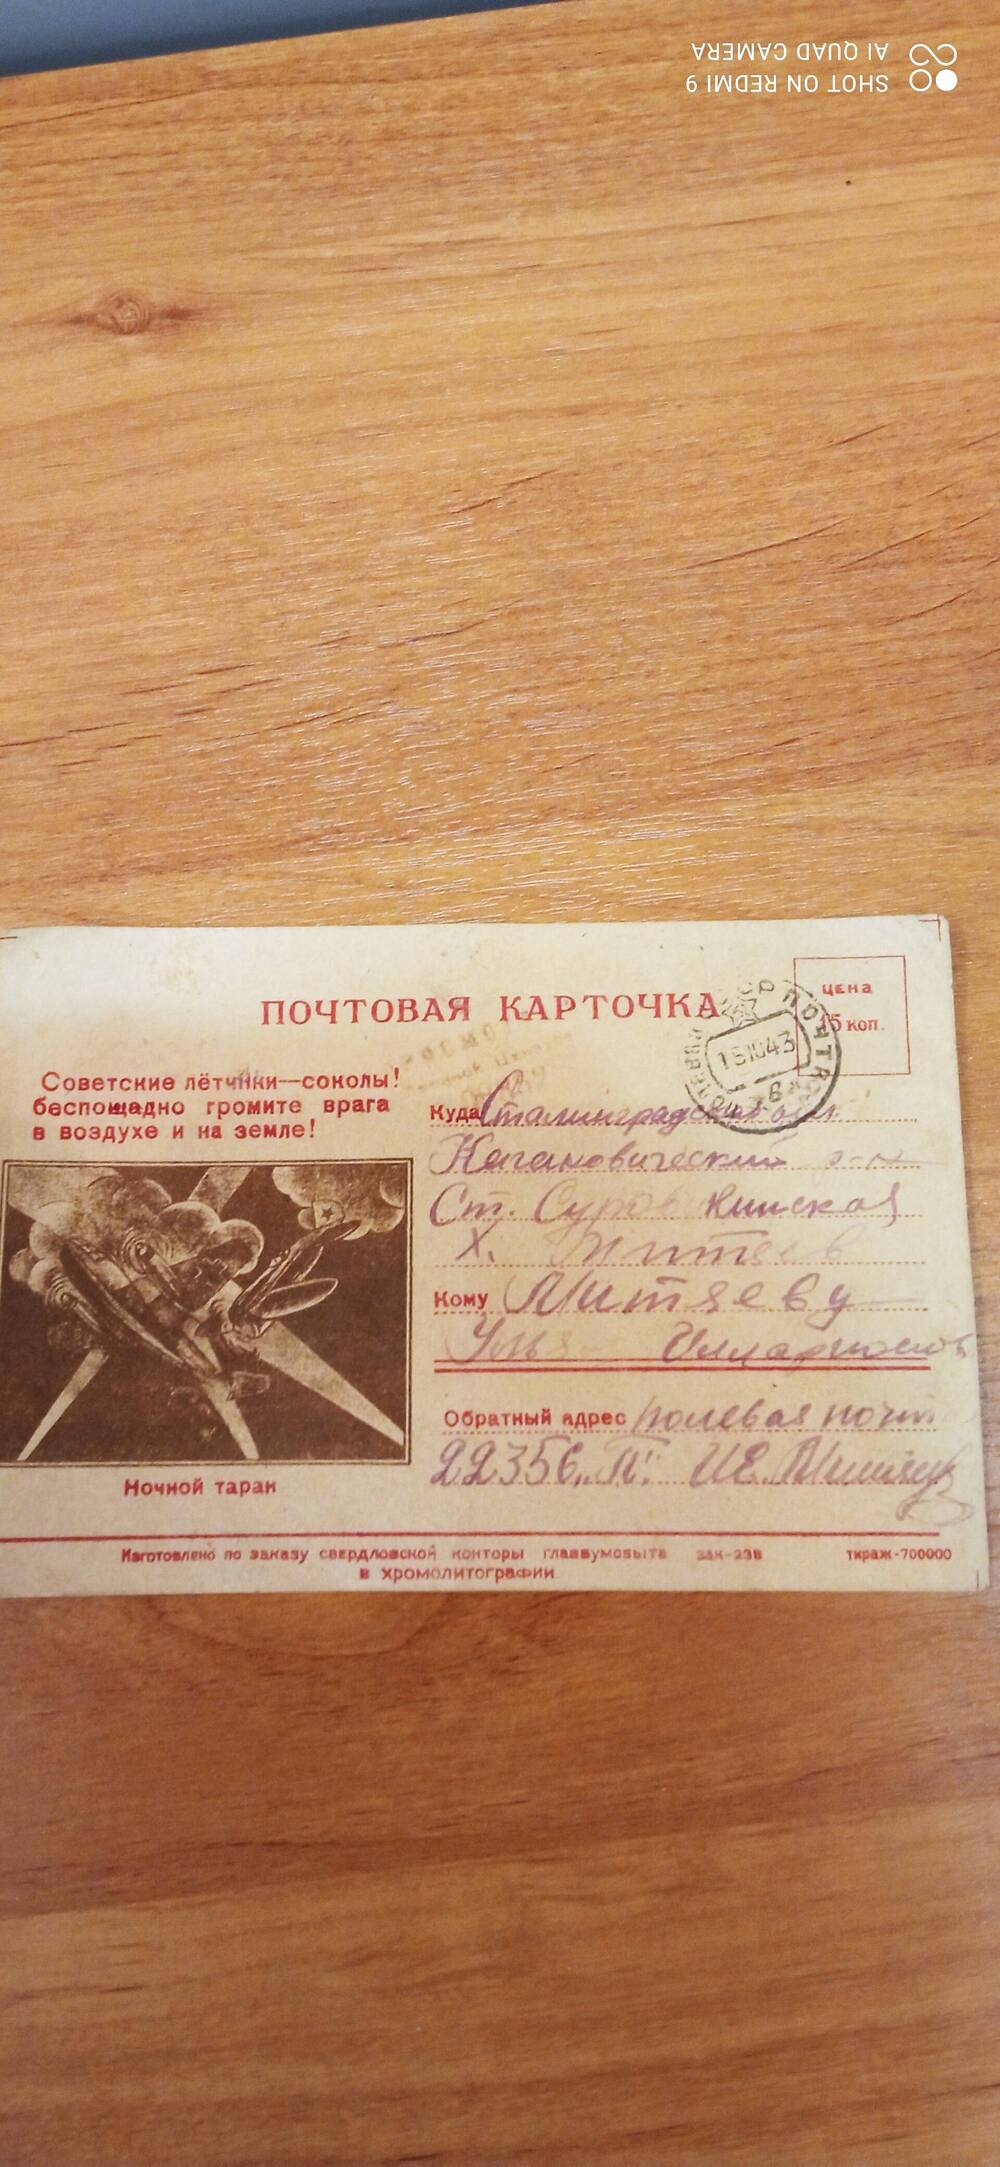 Карточка почтовая Митяева И.Е.